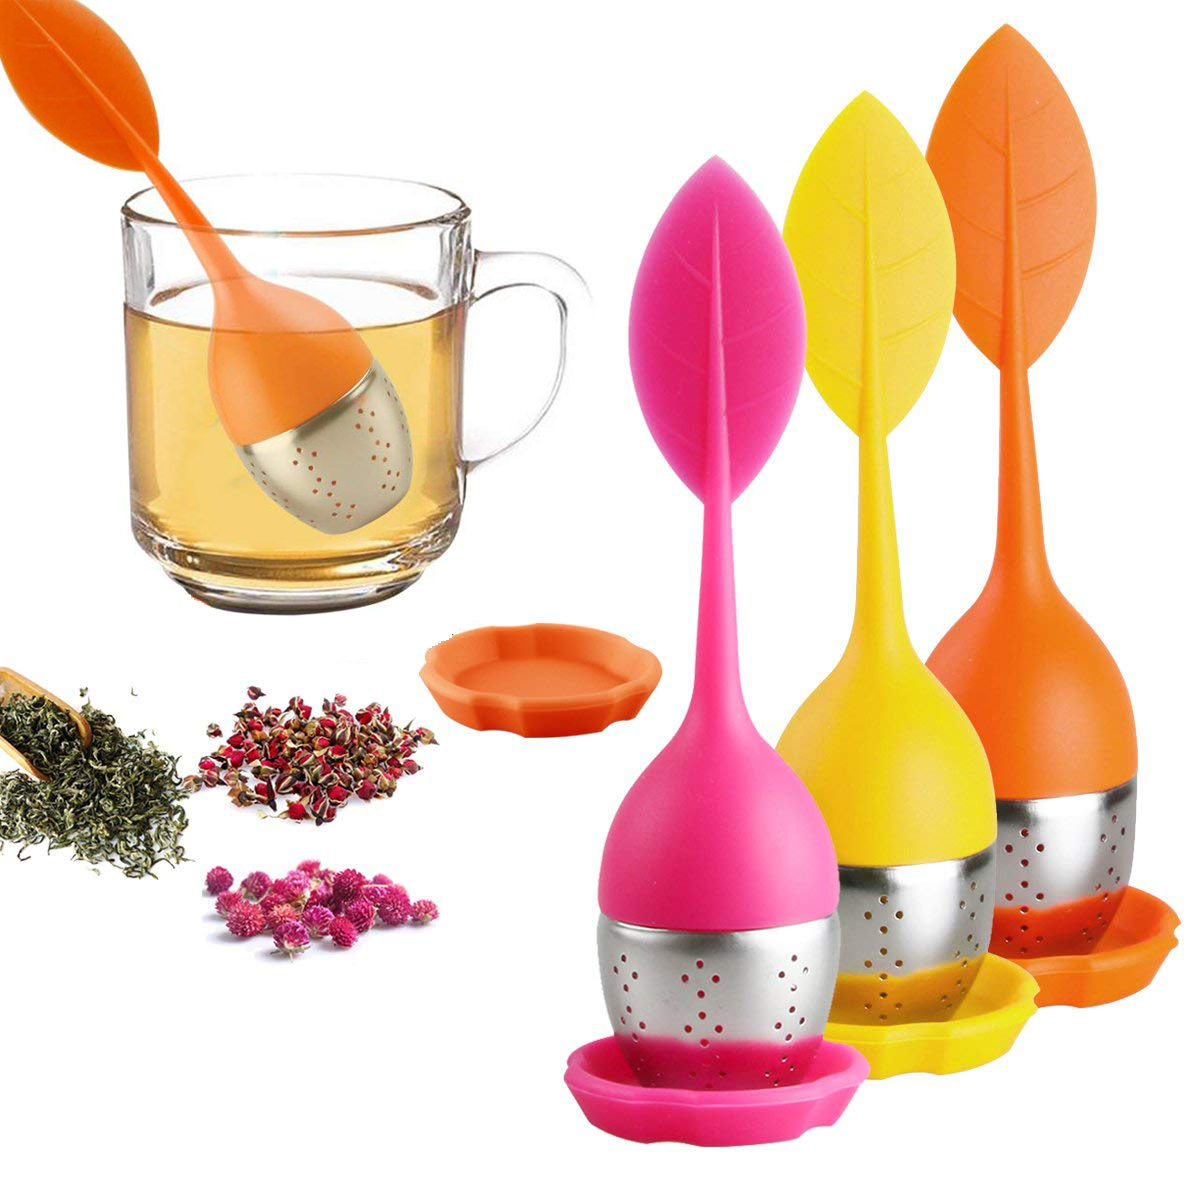 Peroptimist Loose Leaf Tea Infuser , Silicone Handle Tea Infuser, Stainless Steel Strainer ,Tea Diffuser for Loose Tea, Fennel Tea, Herbal Tea 3 Set - Orange/Pink/Yellow - image 1 of 8